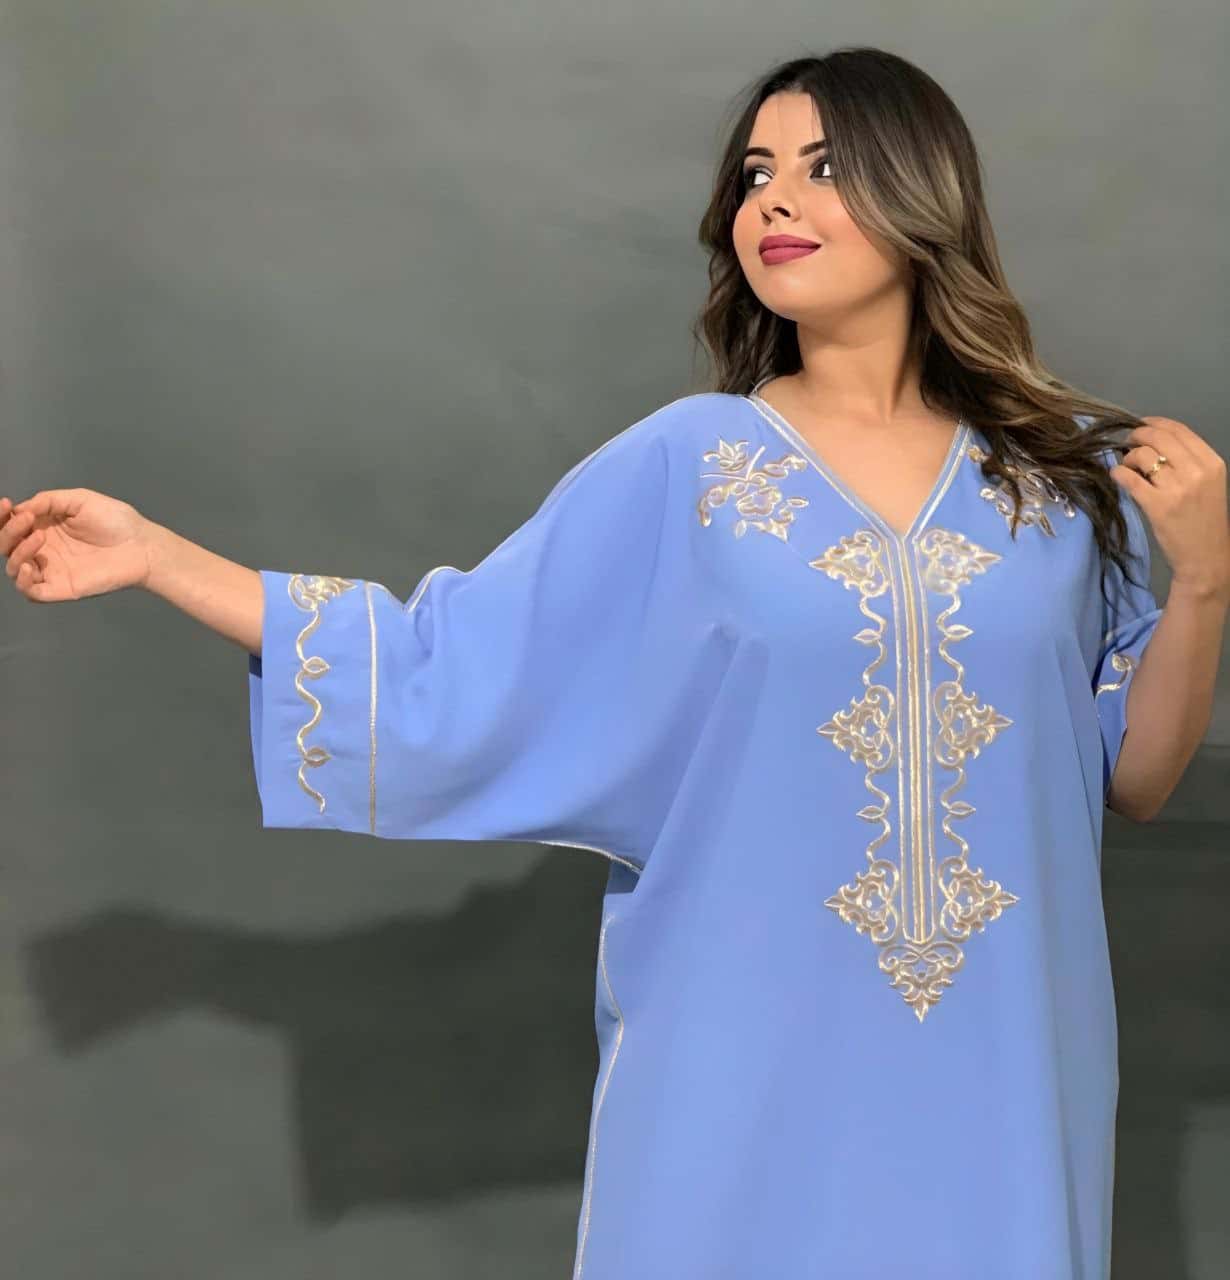 Gandoura marocaine bleu marine élégante pour femmes avec motifs